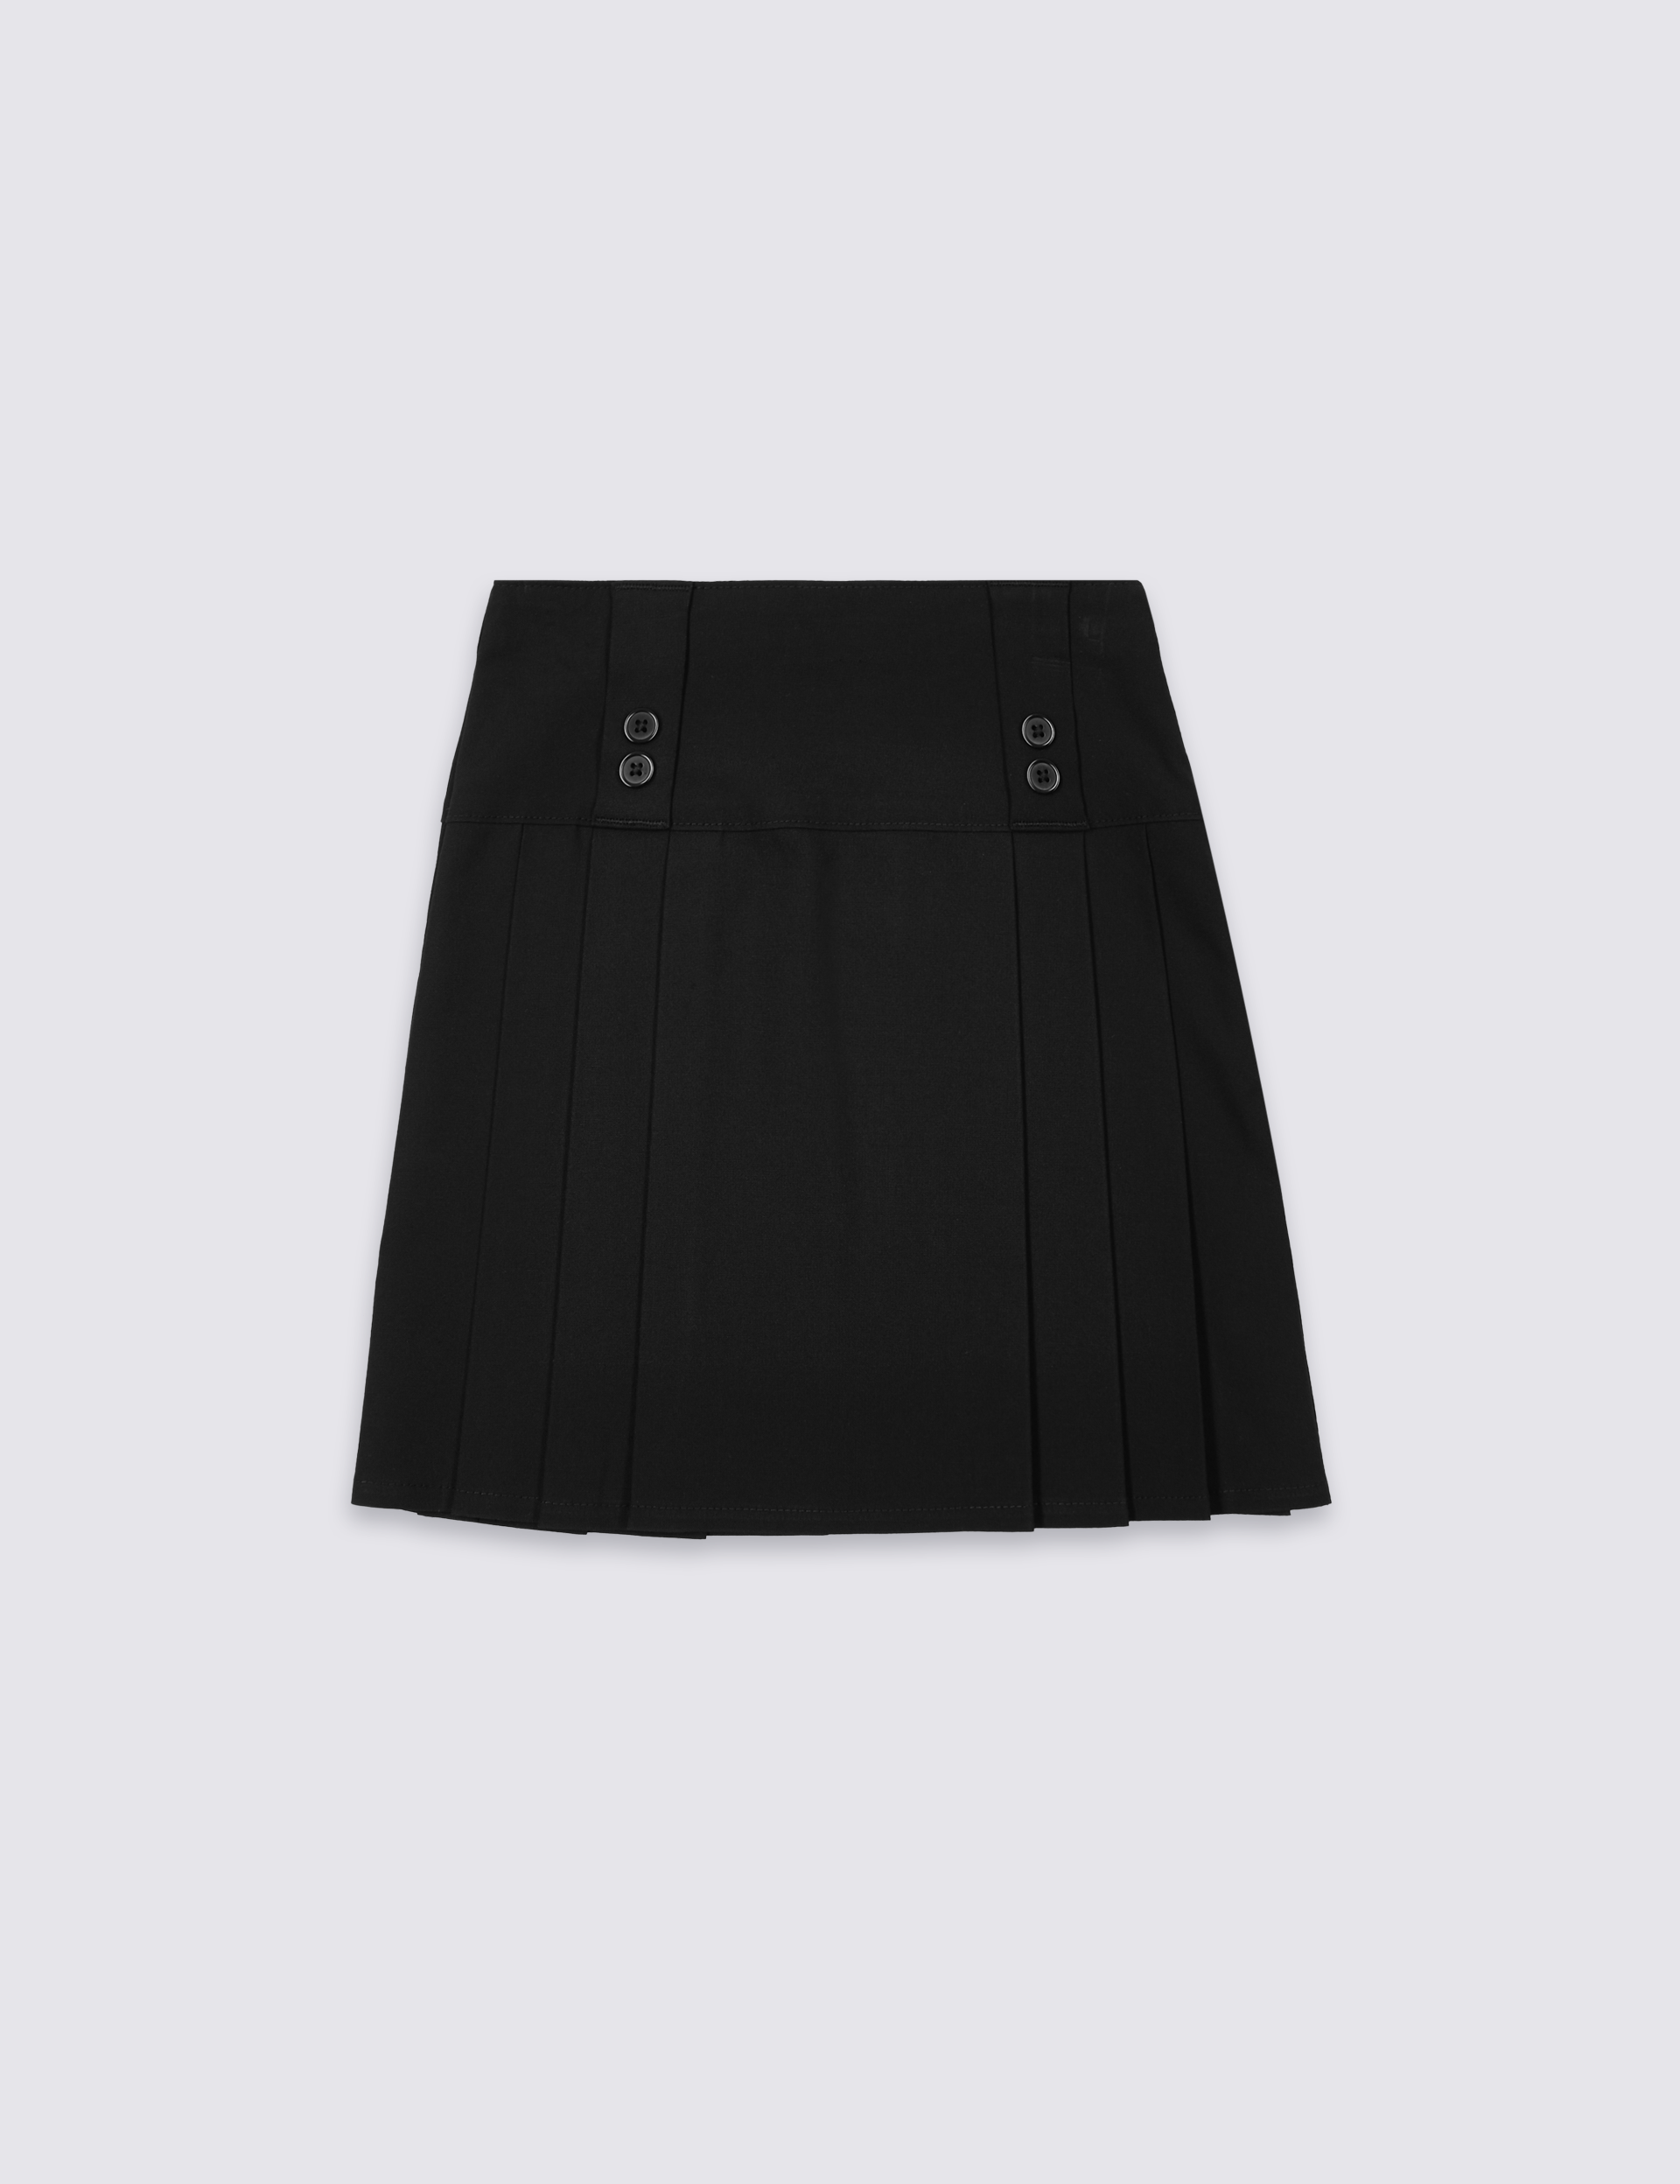 Girls' Black Long Length Pleated Skirt (Lng +4cm, XL +8cm)